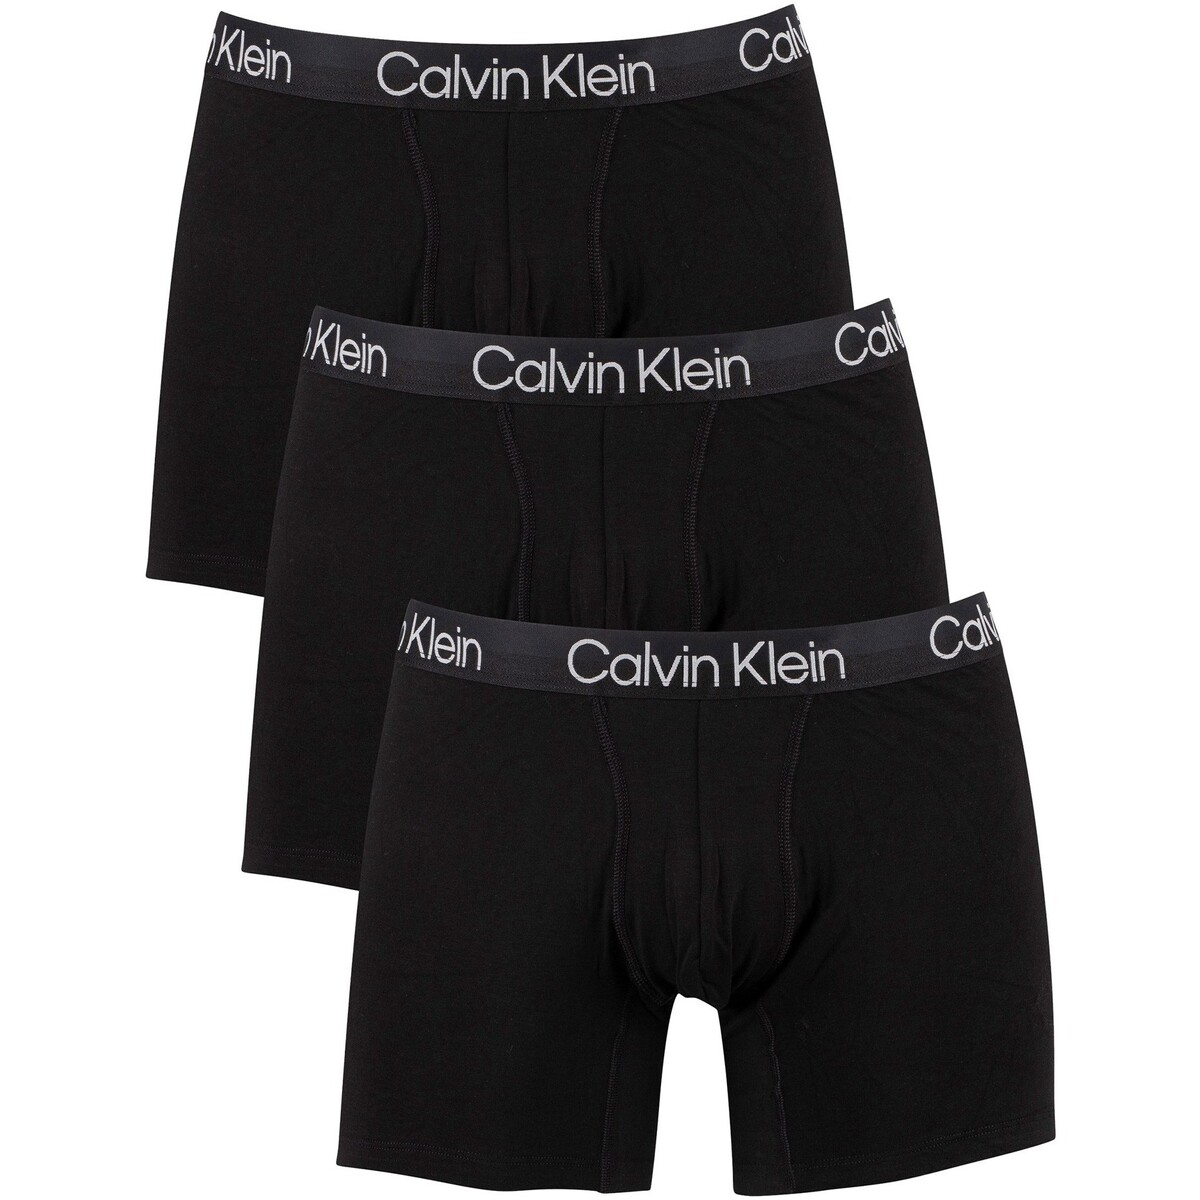 Sous-vêtements Homme Calvin Klein is changing up their Instagram Lot de 3 boxers à structure moderne Noir